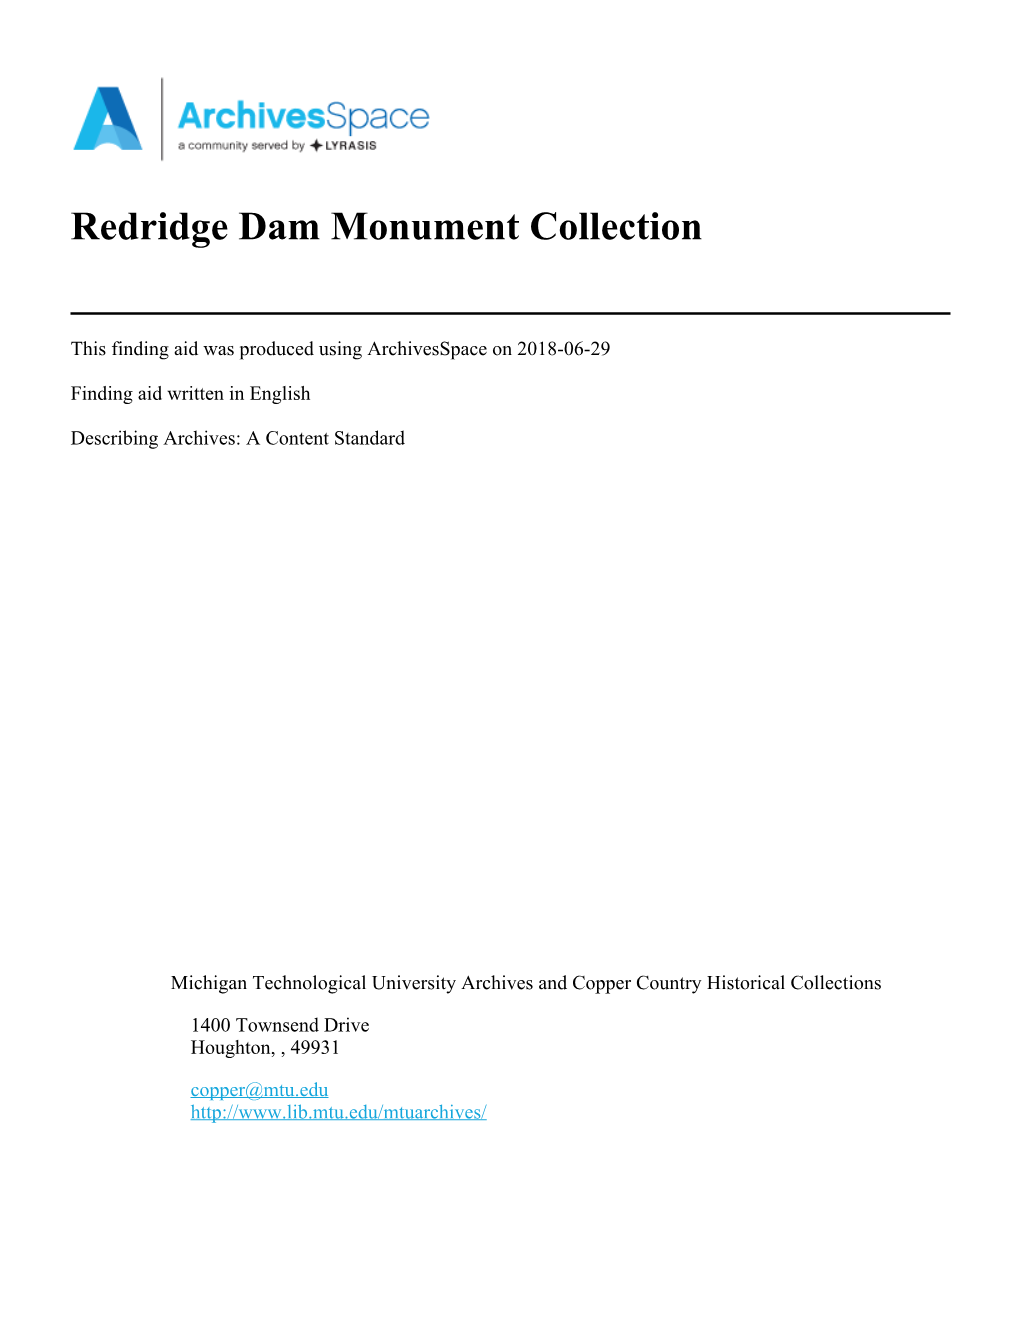 MTU-231 — Redridge Dam Monument Collection